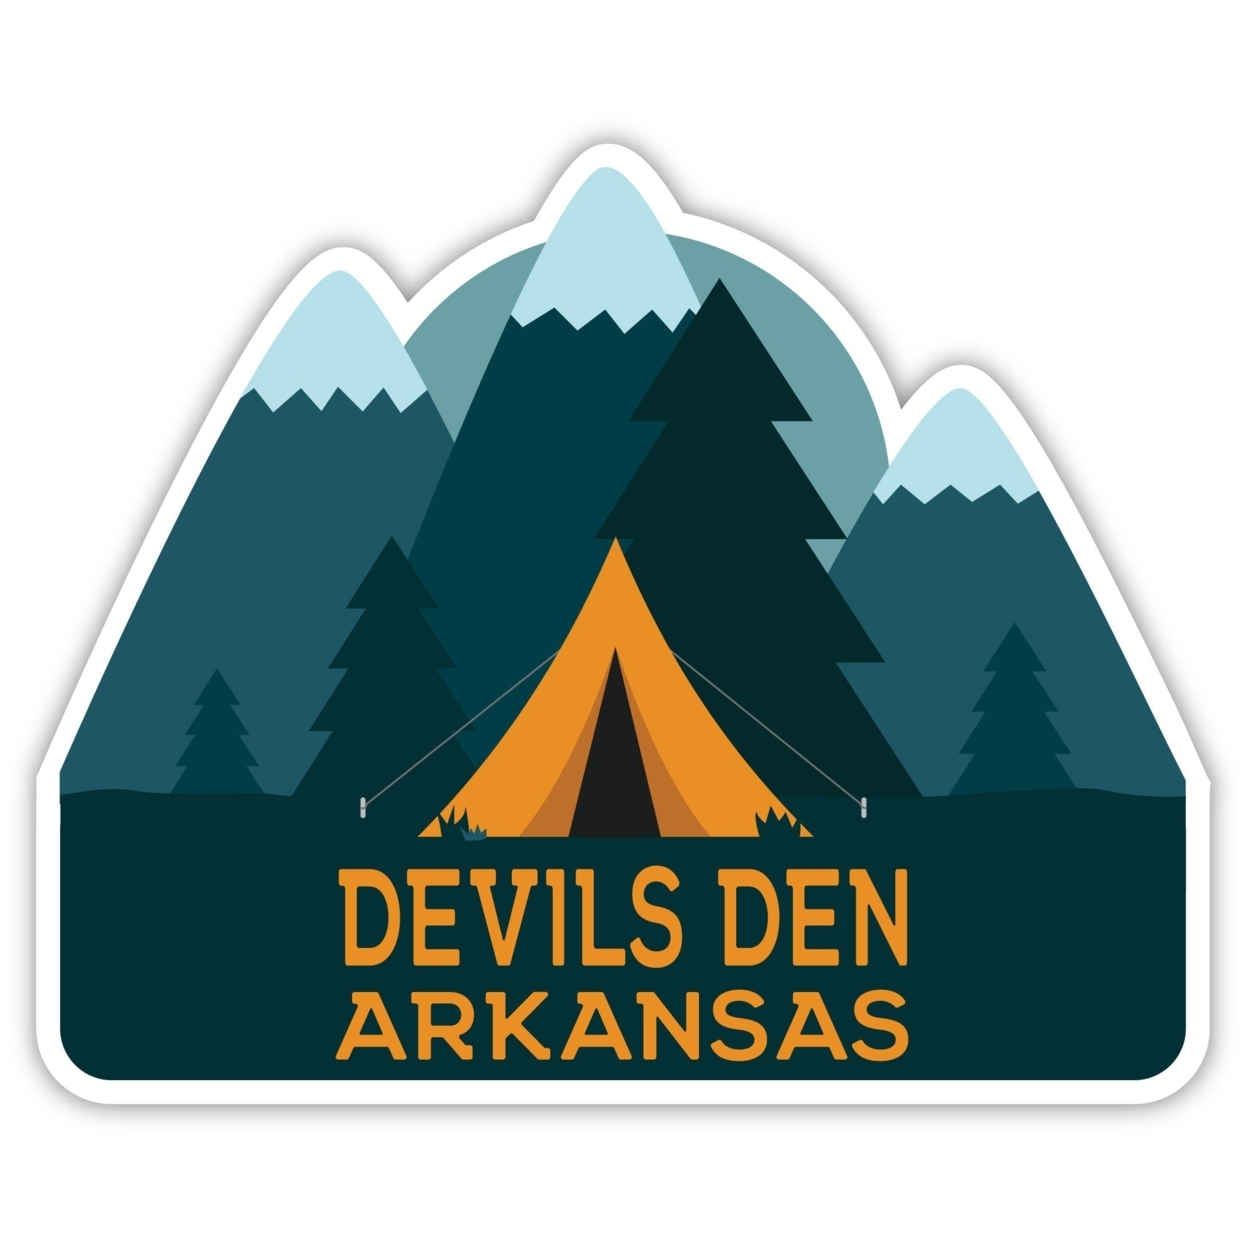 Devils Den Arkansas Souvenir Decorative Stickers (Choose Theme And Size) - Single Unit, 8-Inch, Tent